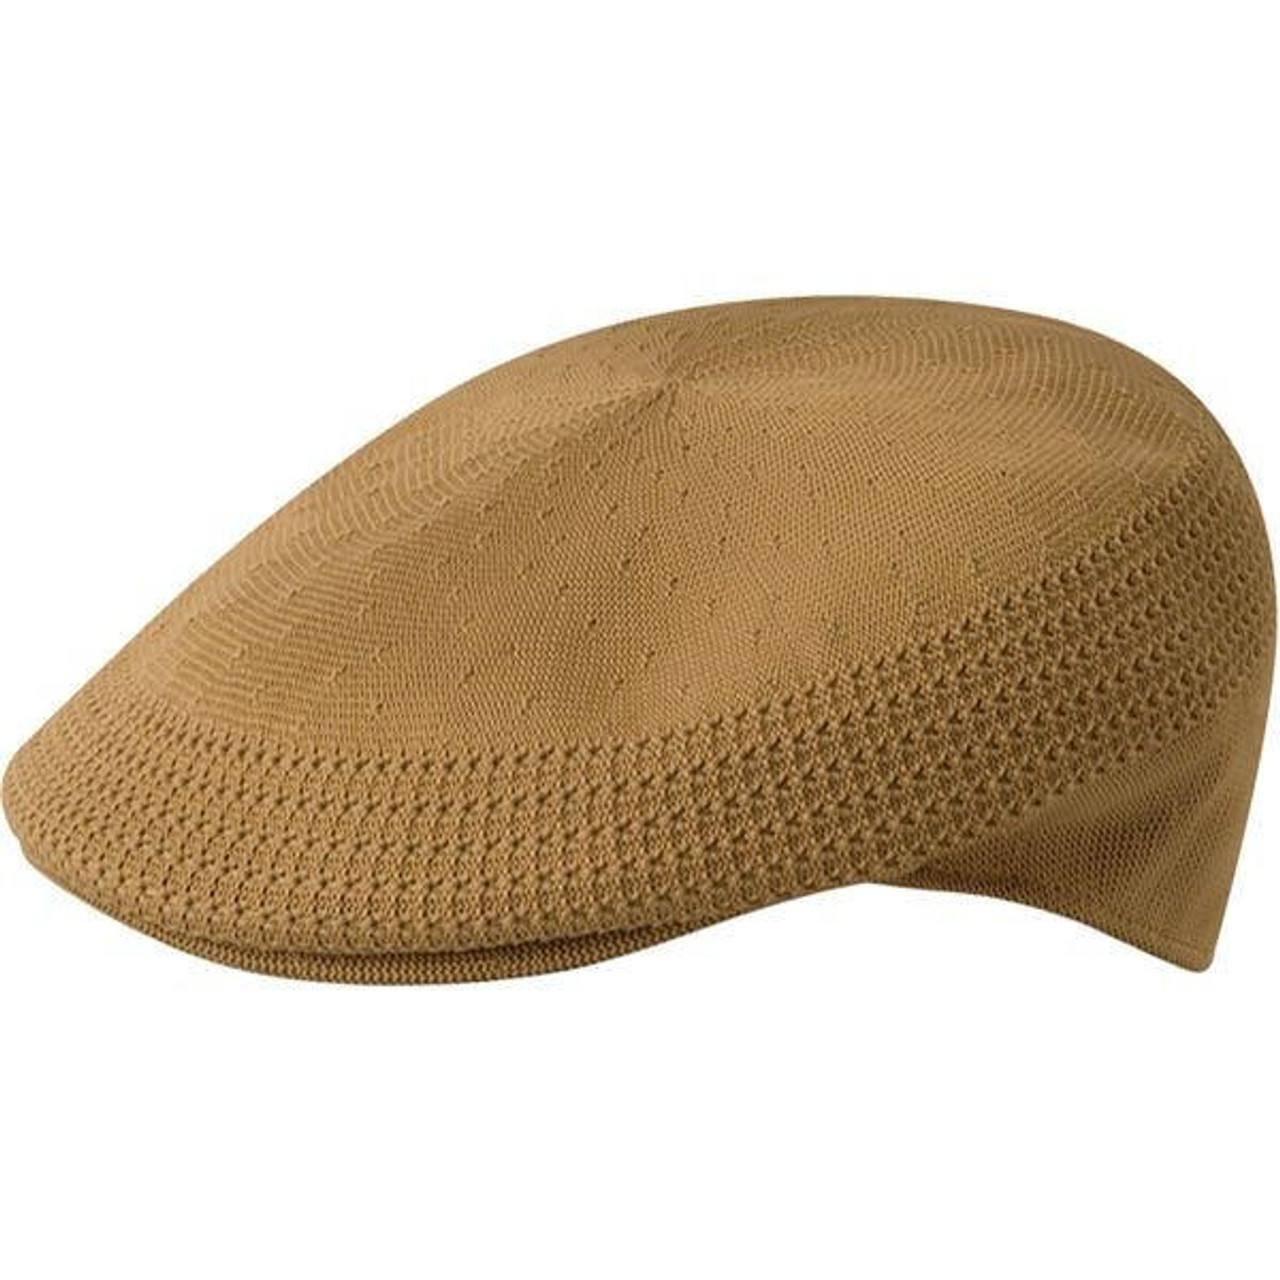 Kangol Hats | Mens Hat Fashion | ContempoSuits.com